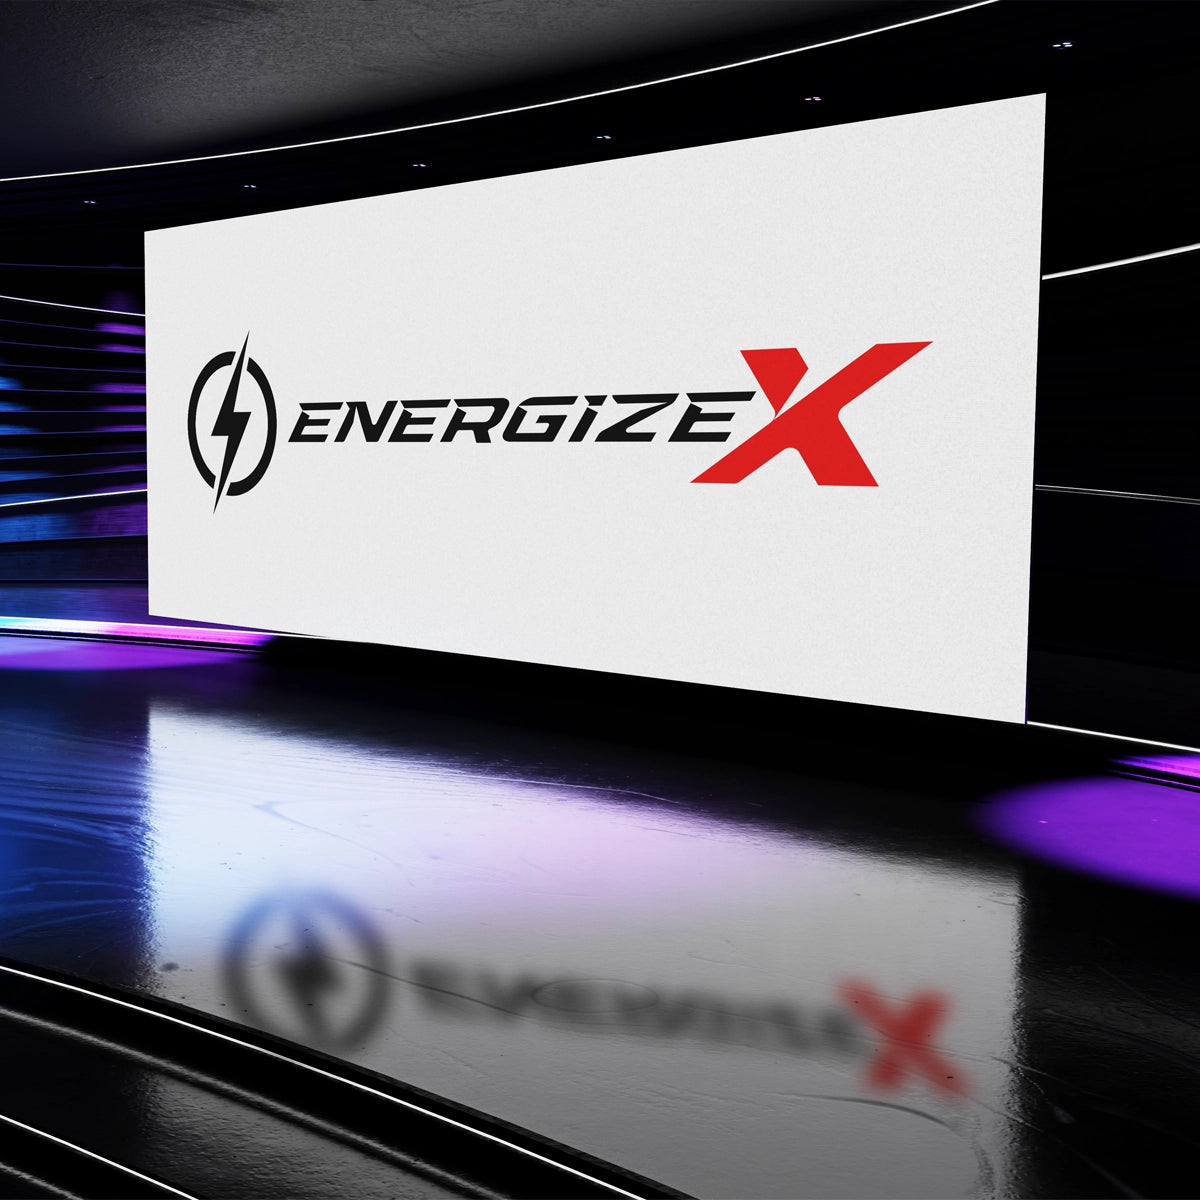 Energizex.com